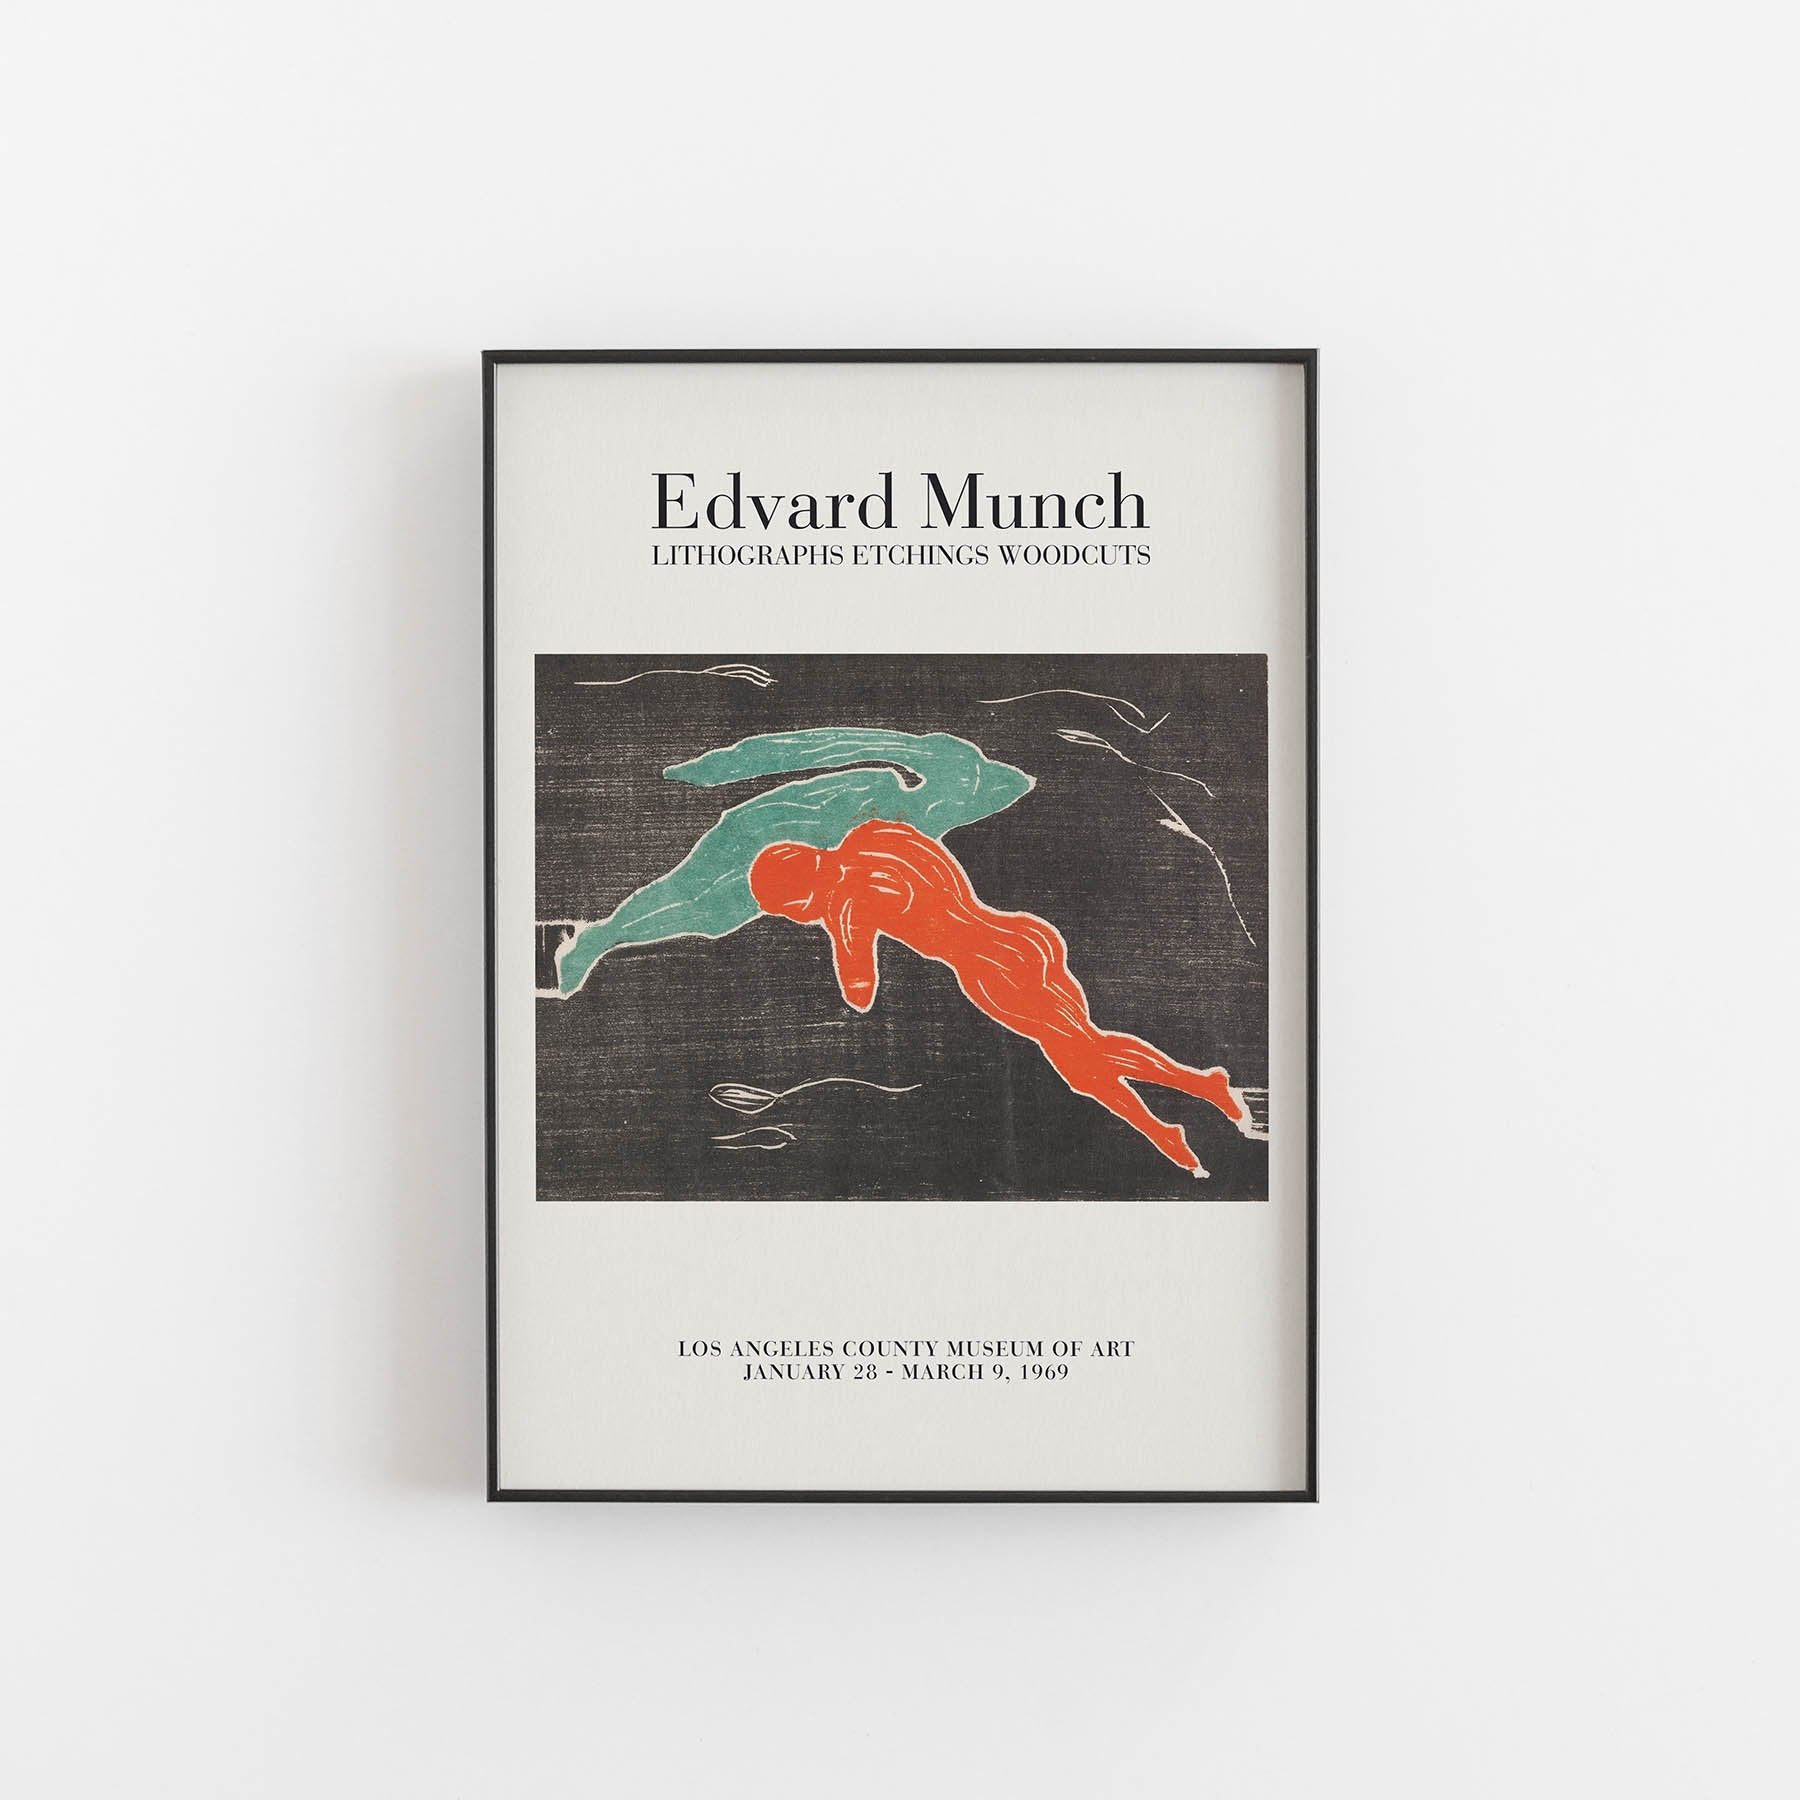 Edvard Munch, art print, Kunsttryk, Konsttryck, kunsttrykk, kunstdruck, poster,  affiche, affisch